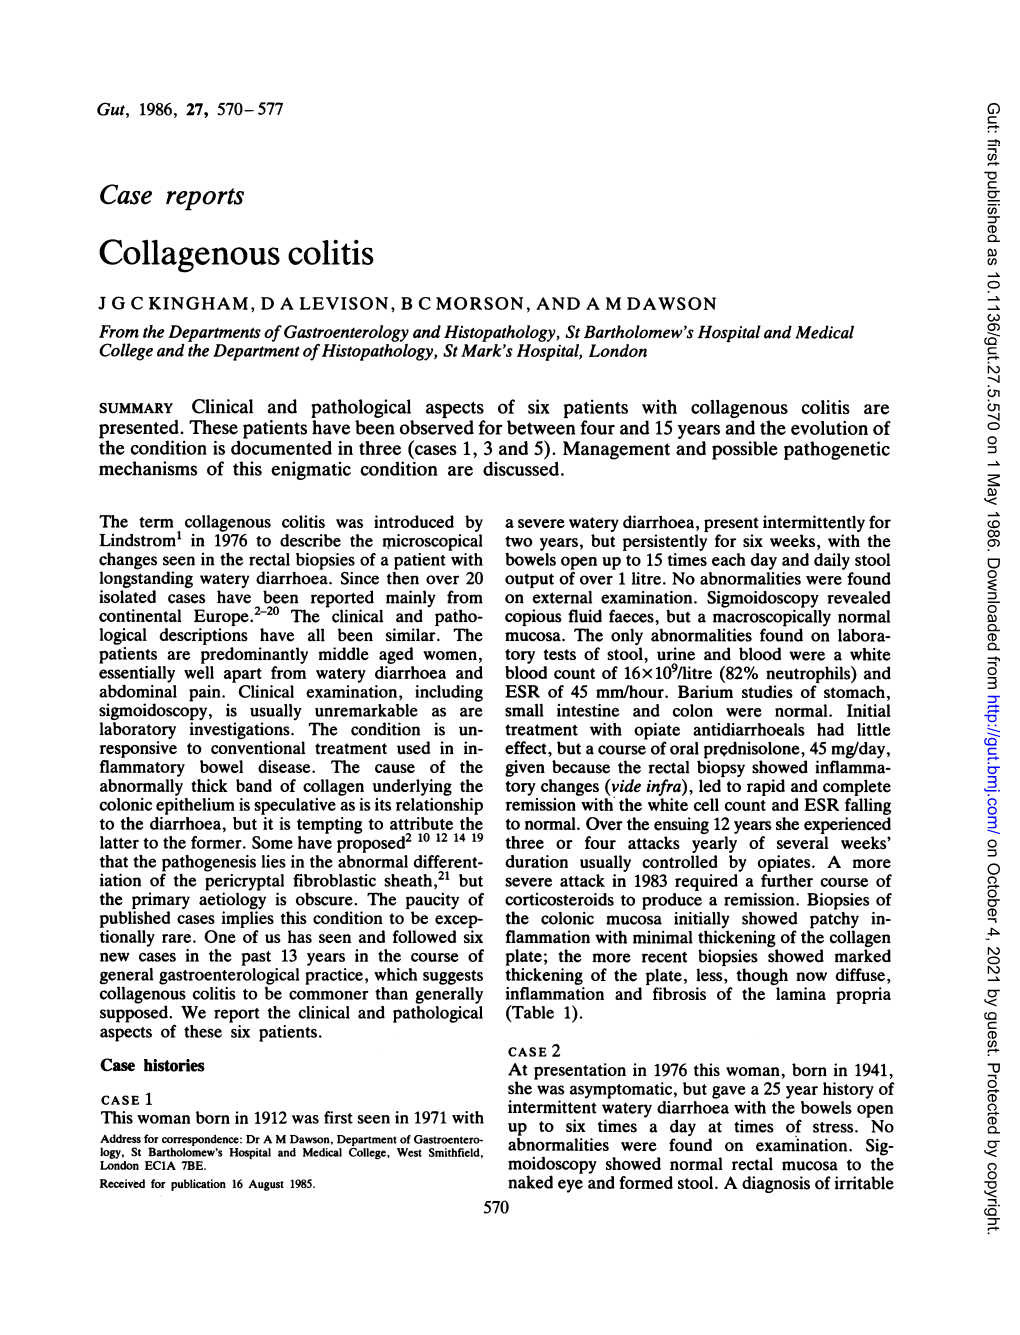 Collagenous Colitis